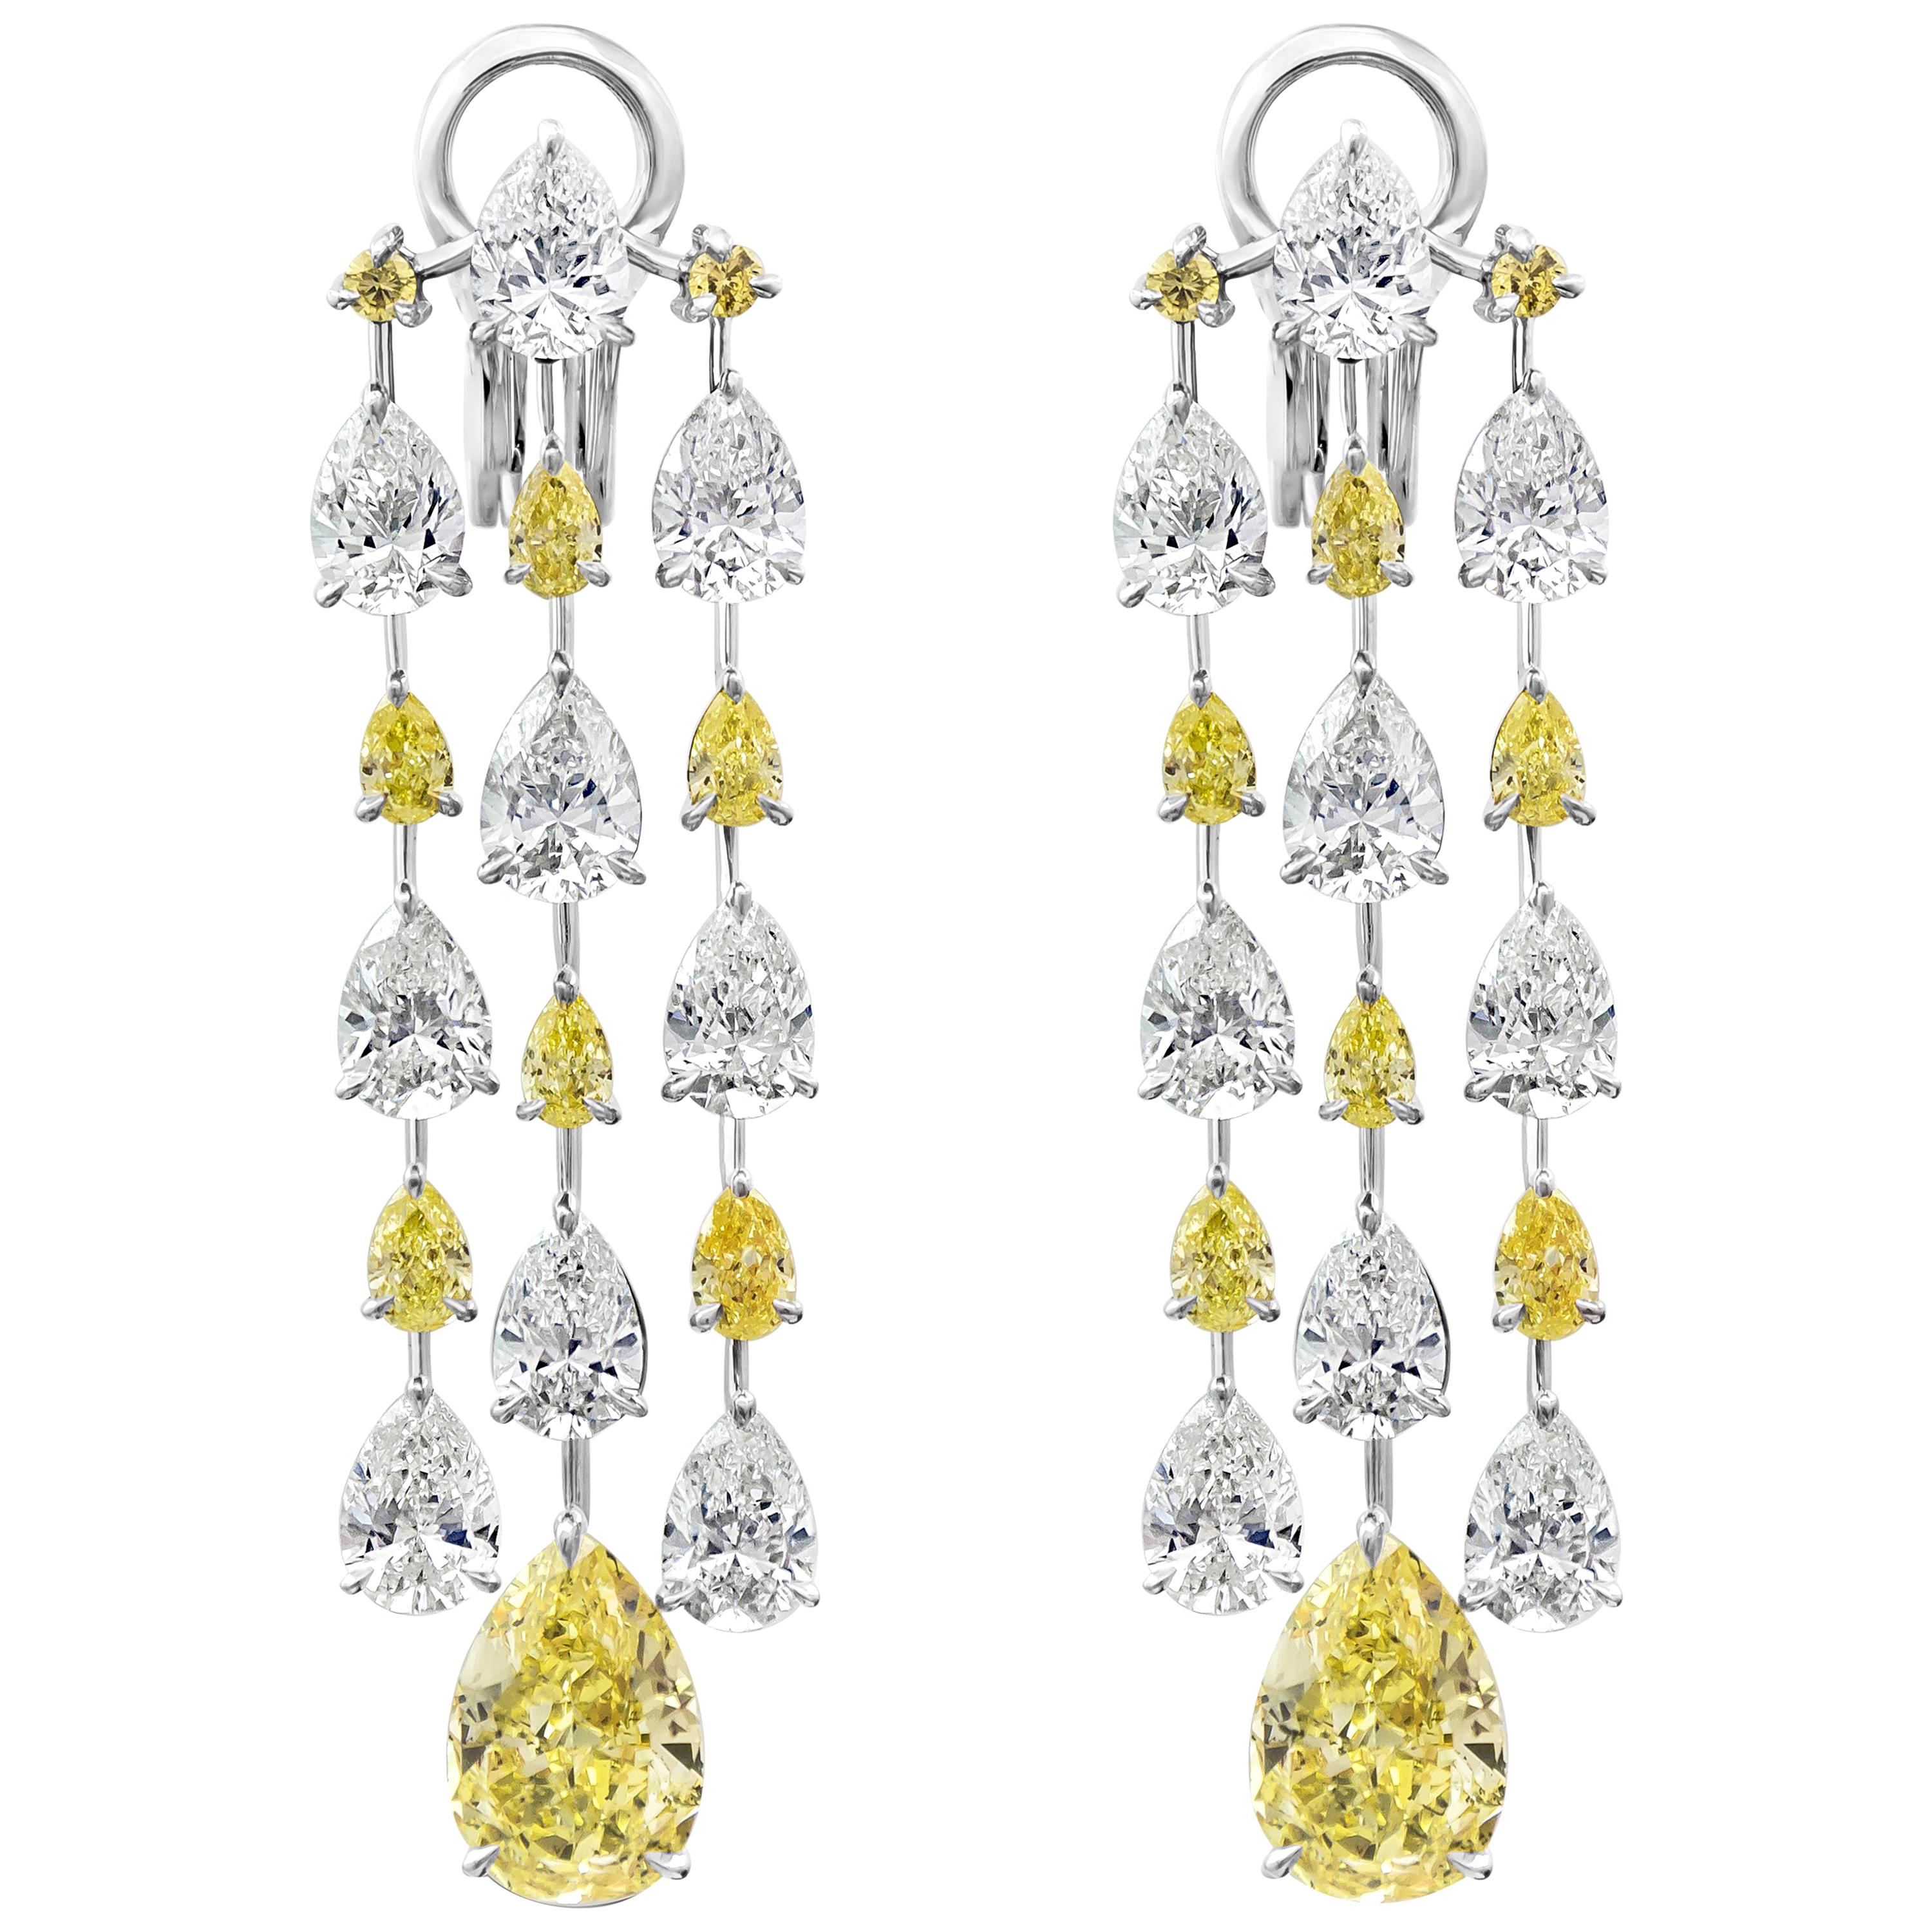 15.69 Carats Total Pear Shape Fancy Yellow White Diamond Chandelier Earrings